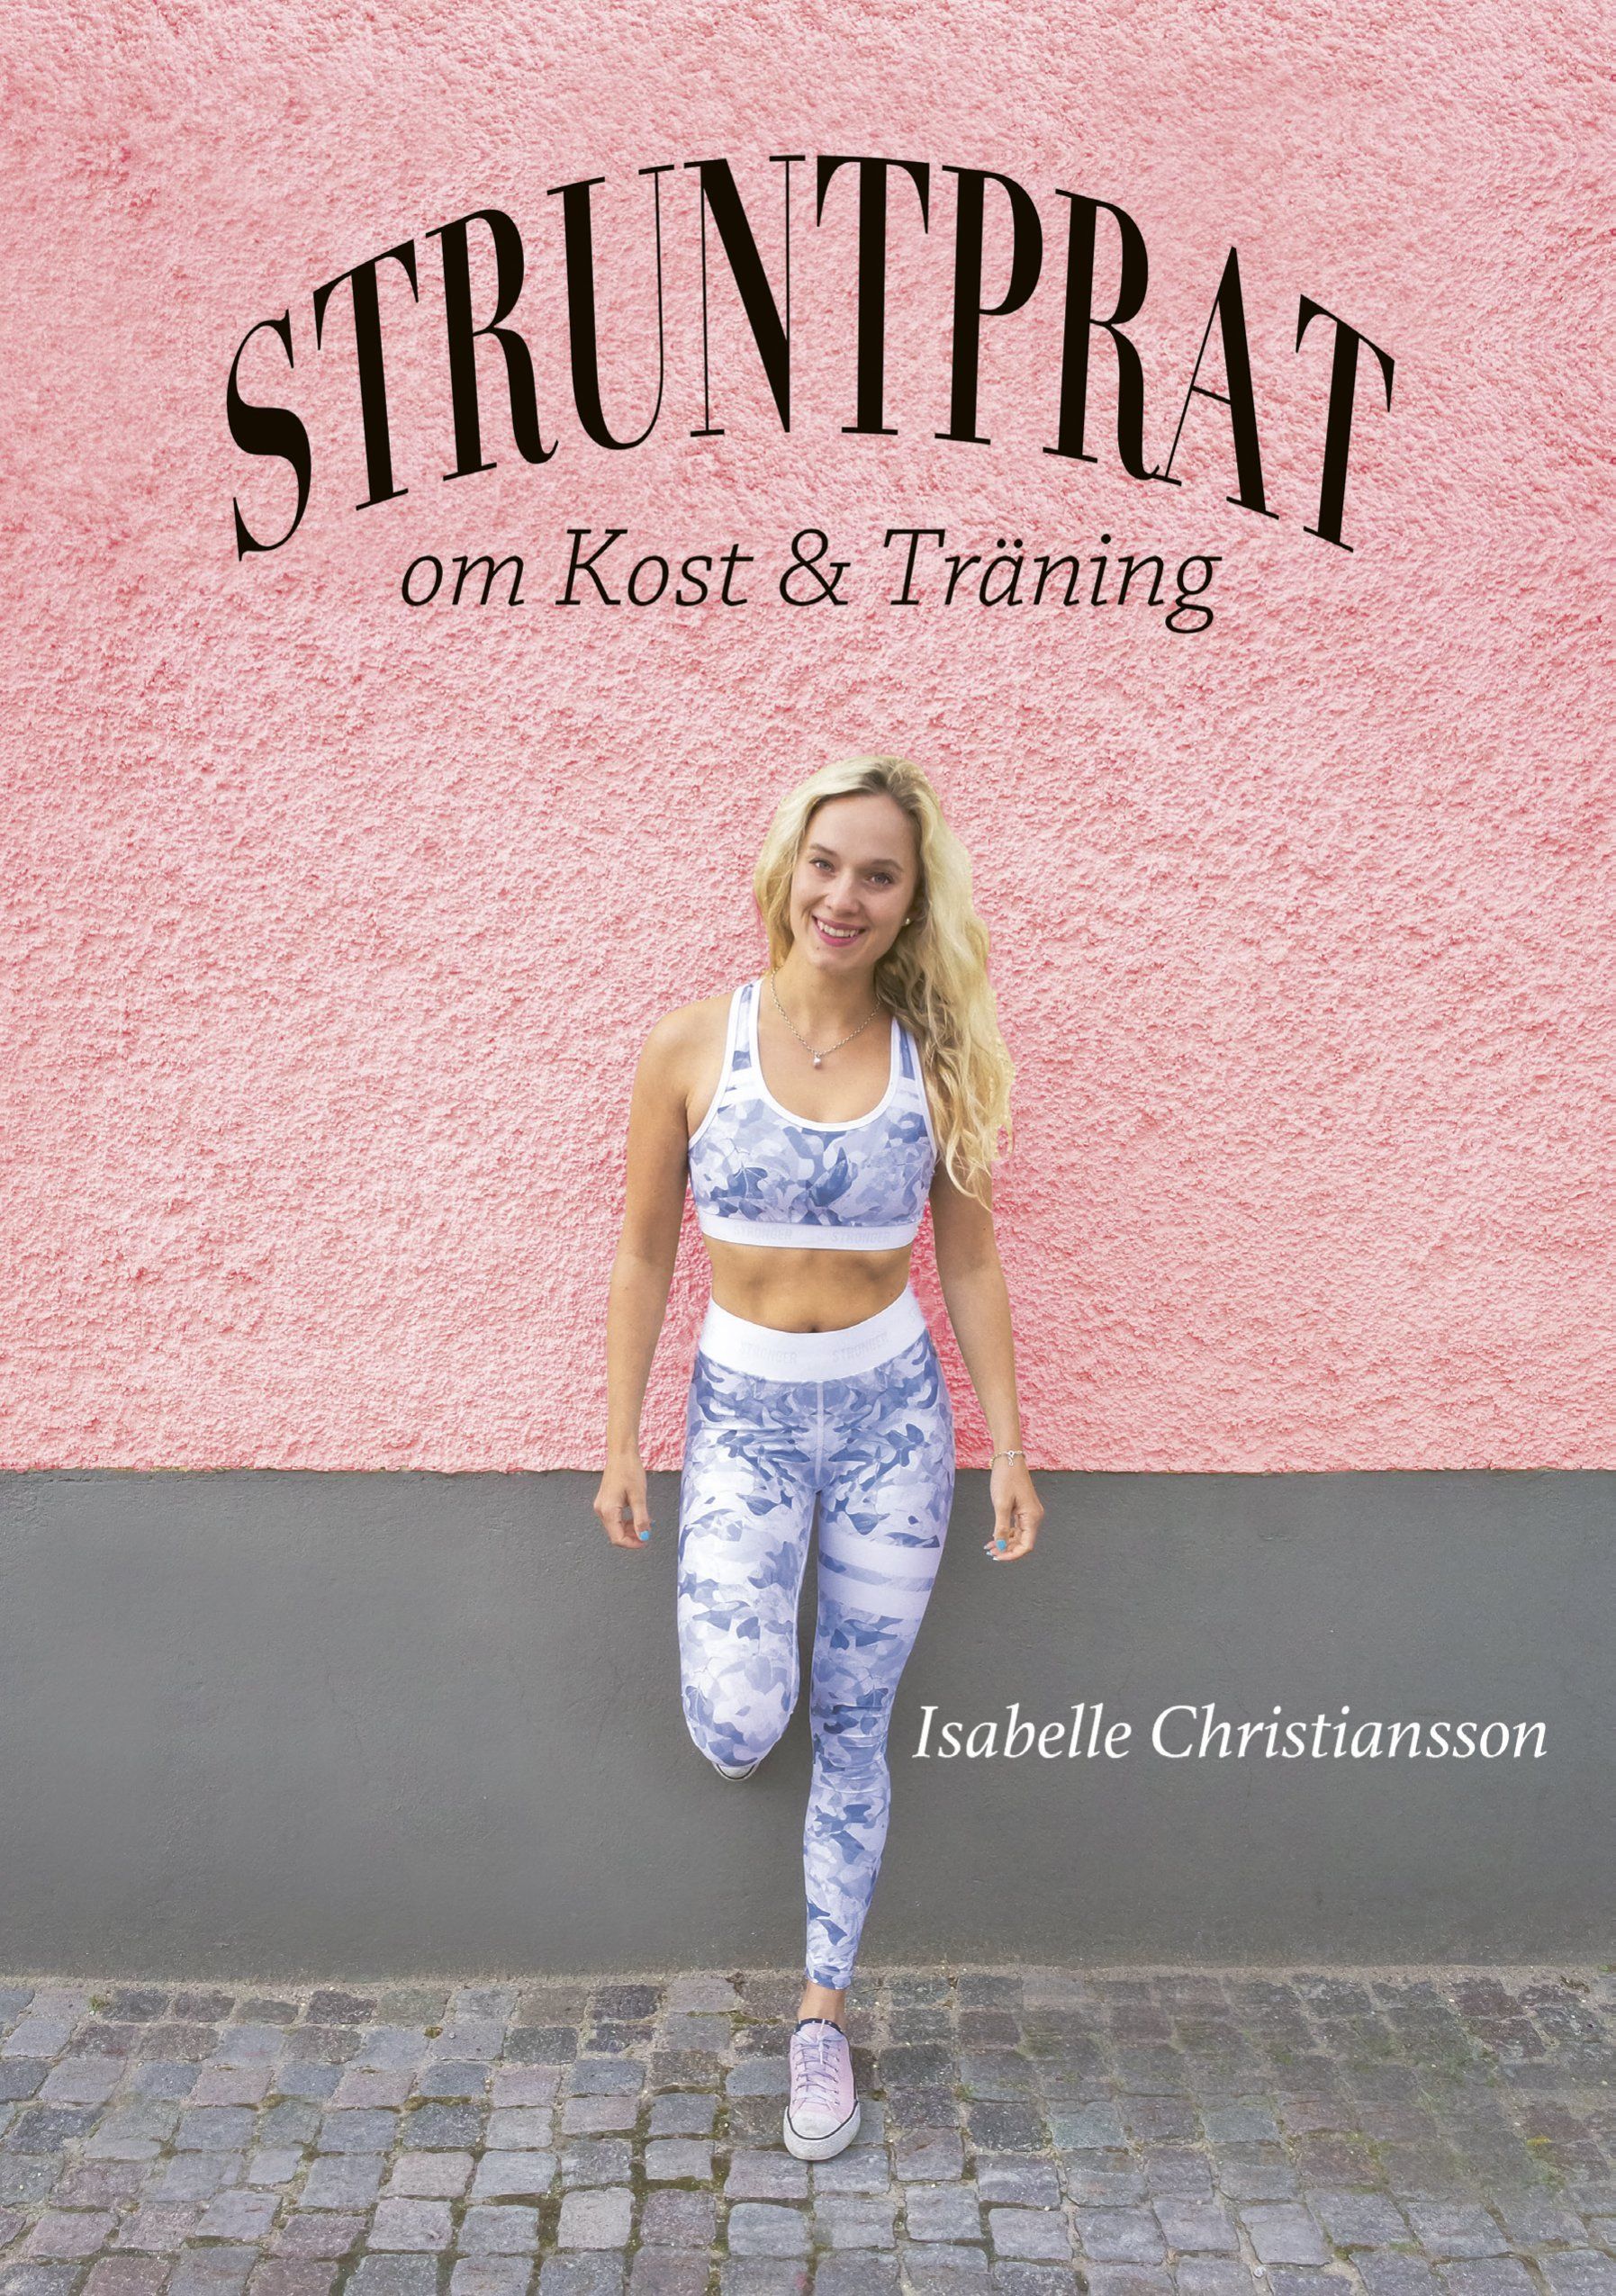 Faktaboken Struntprat om kost och träning är skriven av Isabelle Christiansson på Stevali Bokförlag.